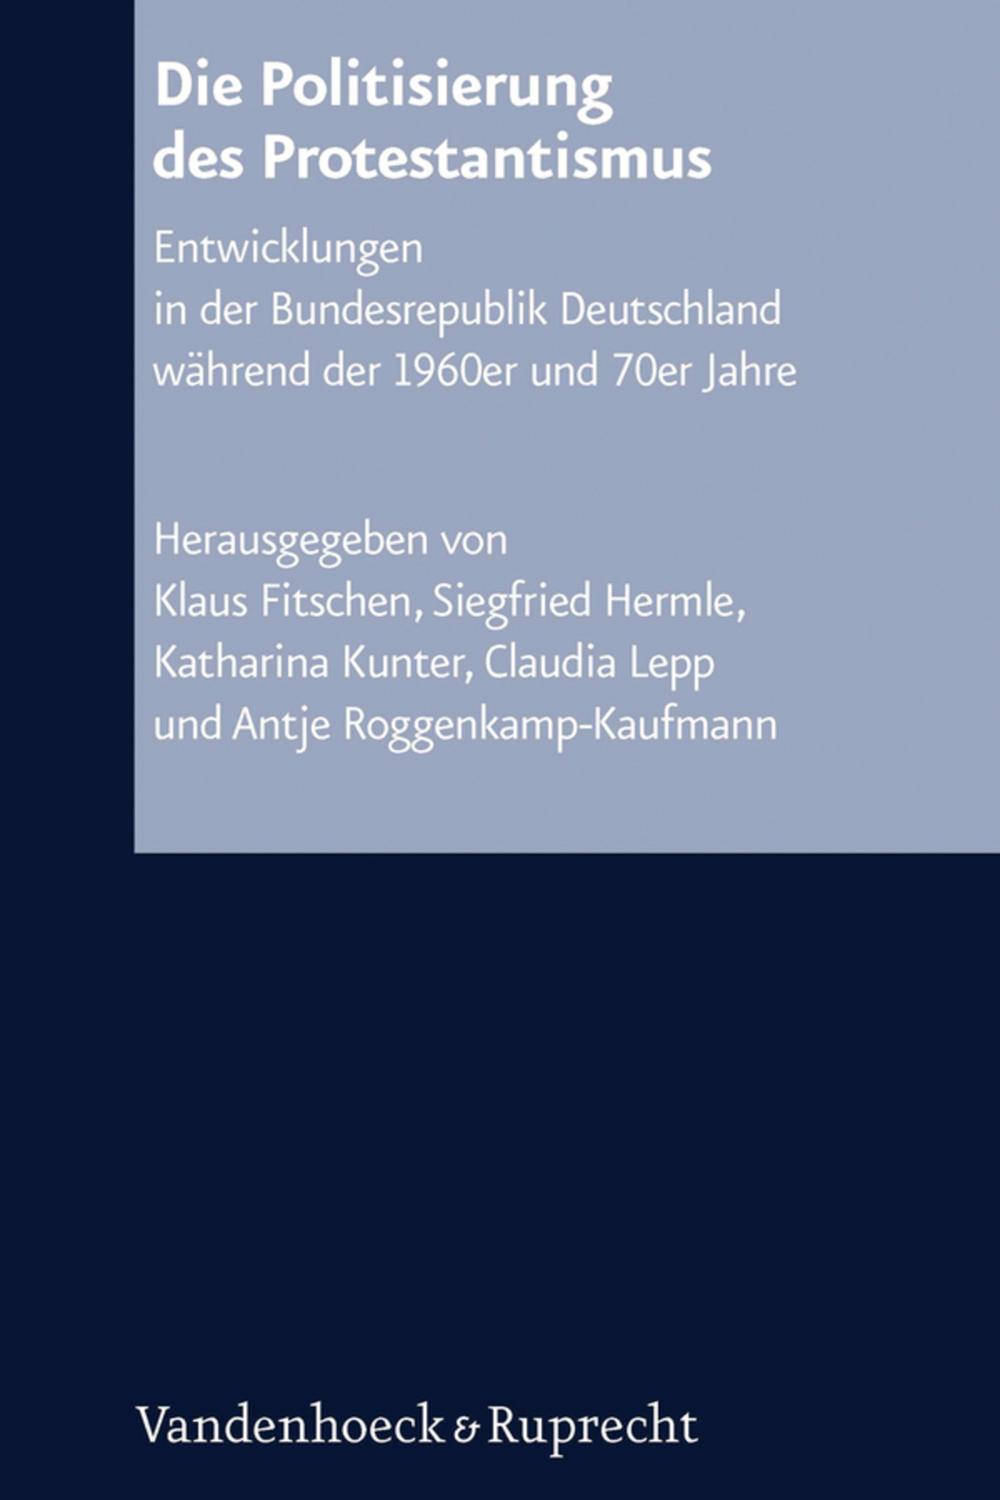 Die Politisierung des Protestantismus - Klaus Fitschen, Siegfried Hermle, Katharina Kunter, Claudia Lepp, Antje Roggenkamp-Kaufmann